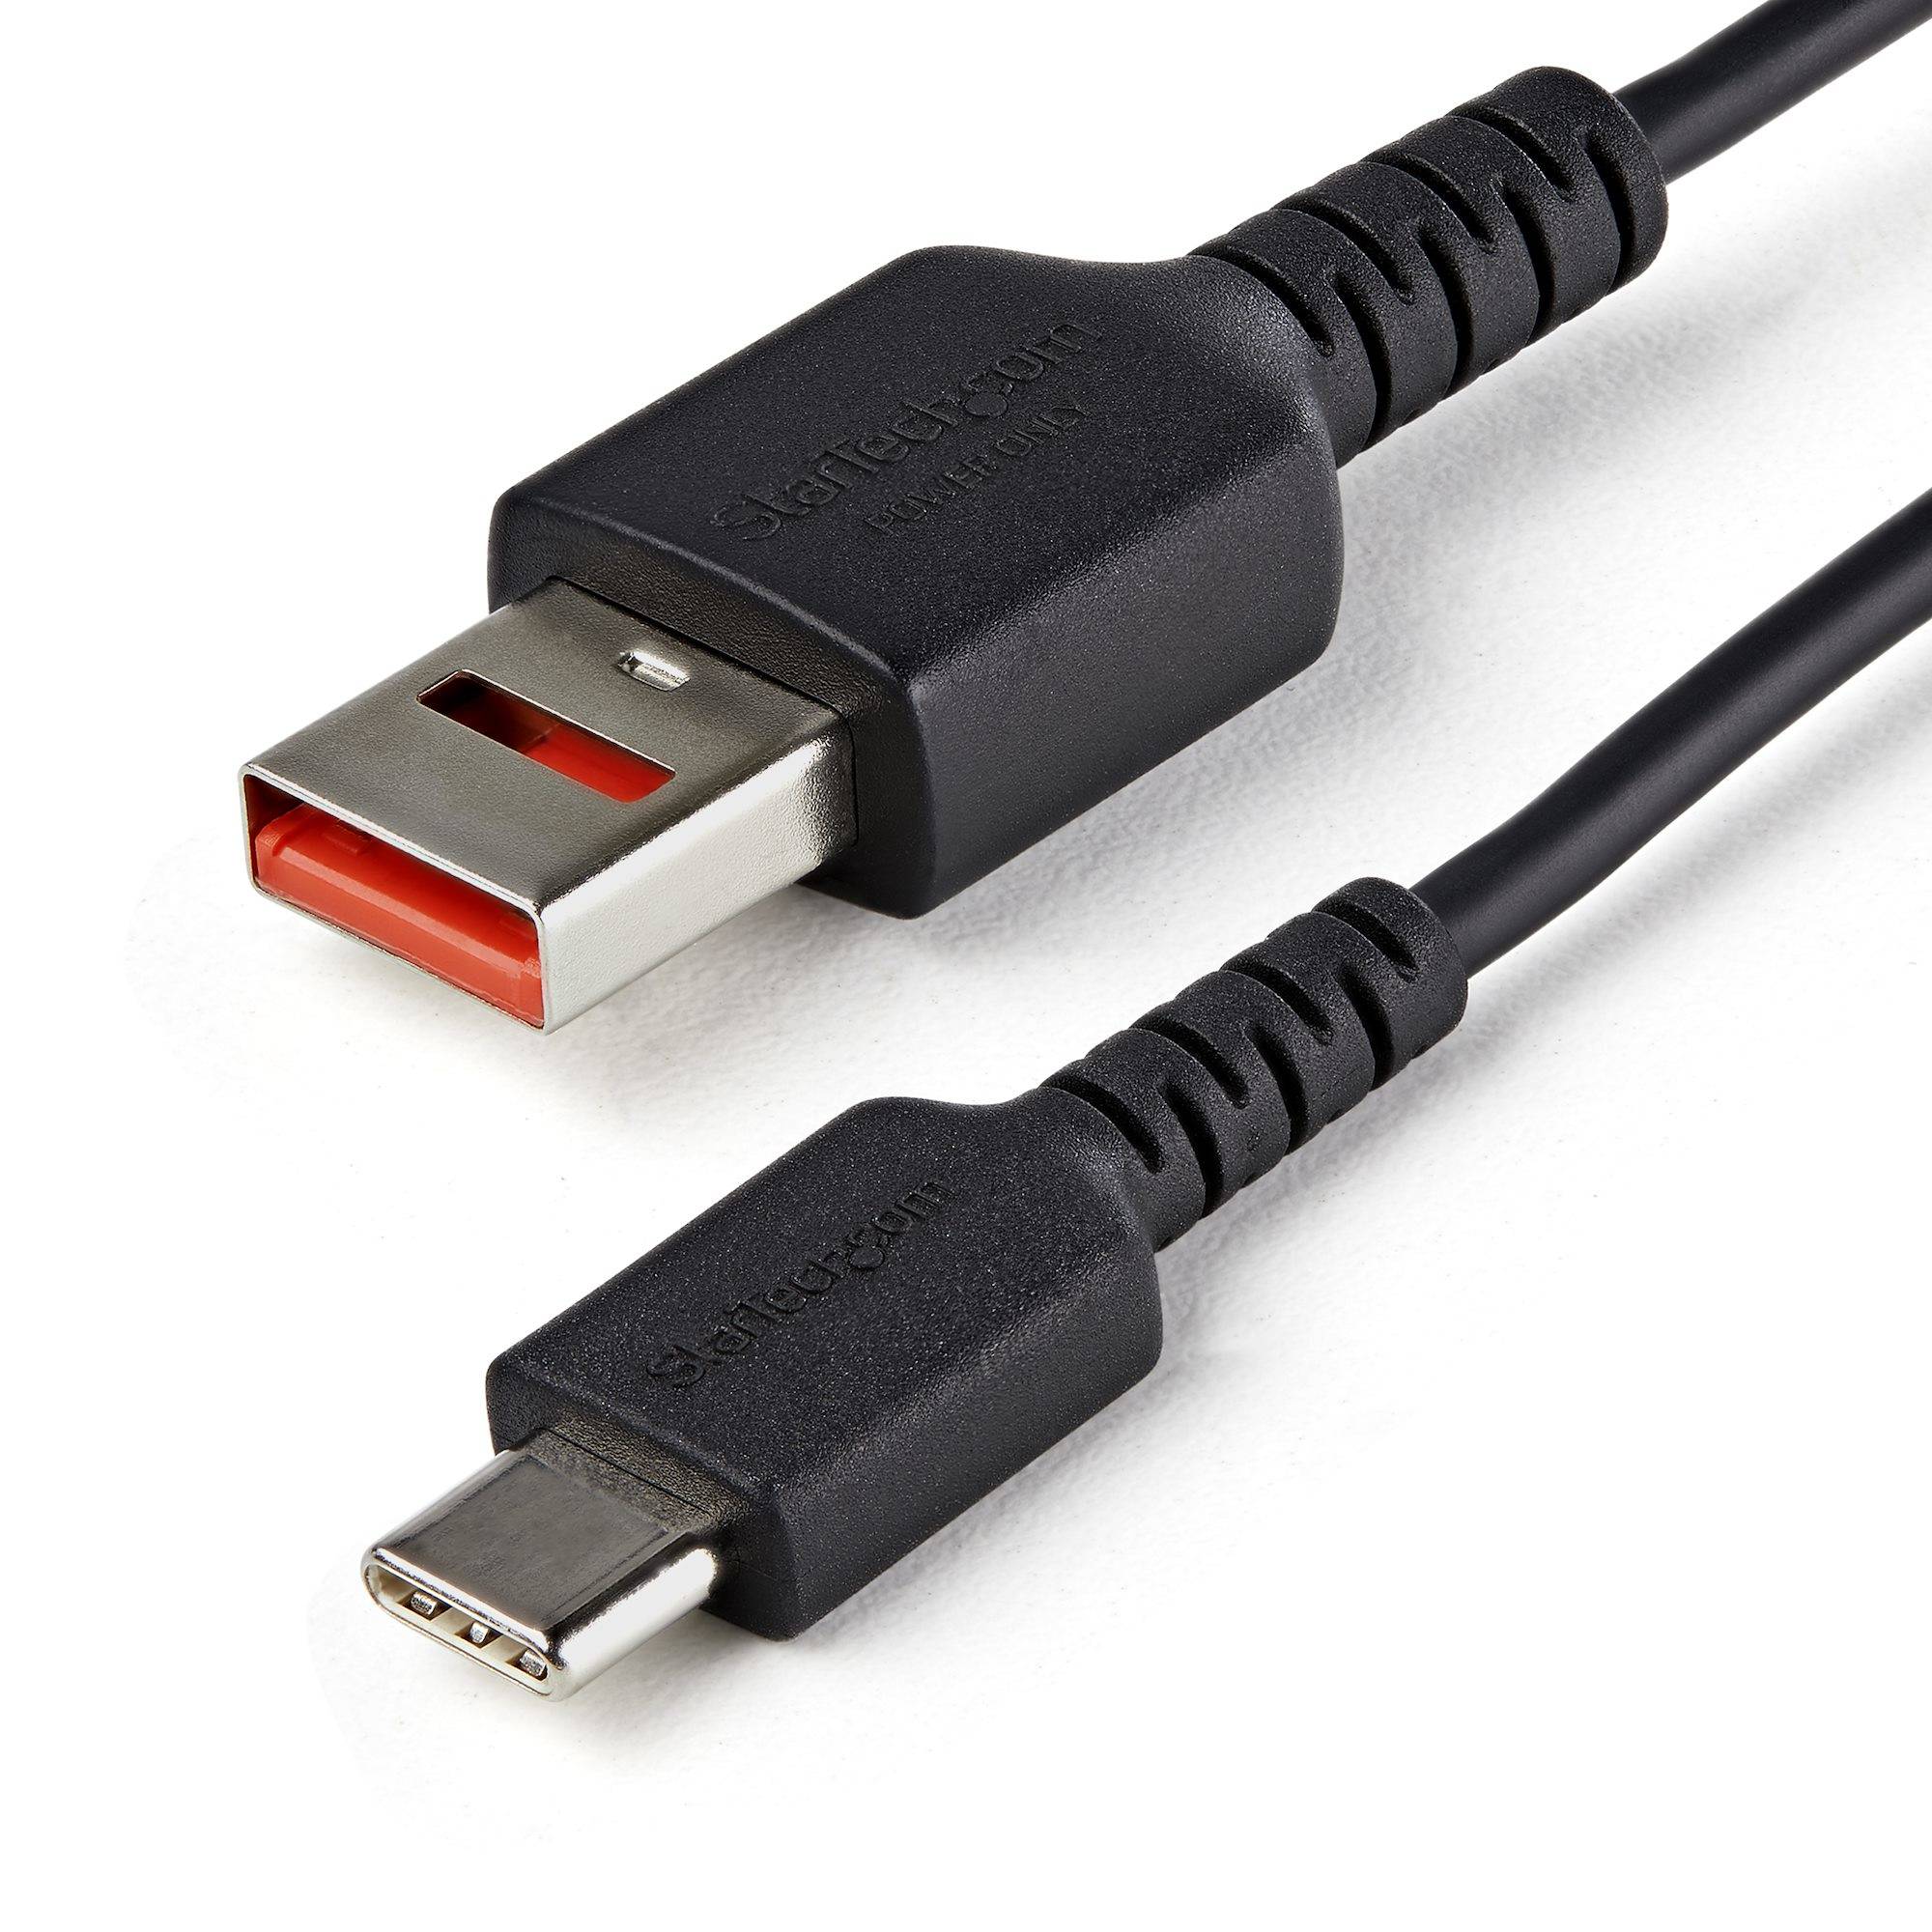 Rca Informatique - Image du produit : 1M SECURE CHARGING CABLE- USB-A TO USB-C DATA BLOCKER